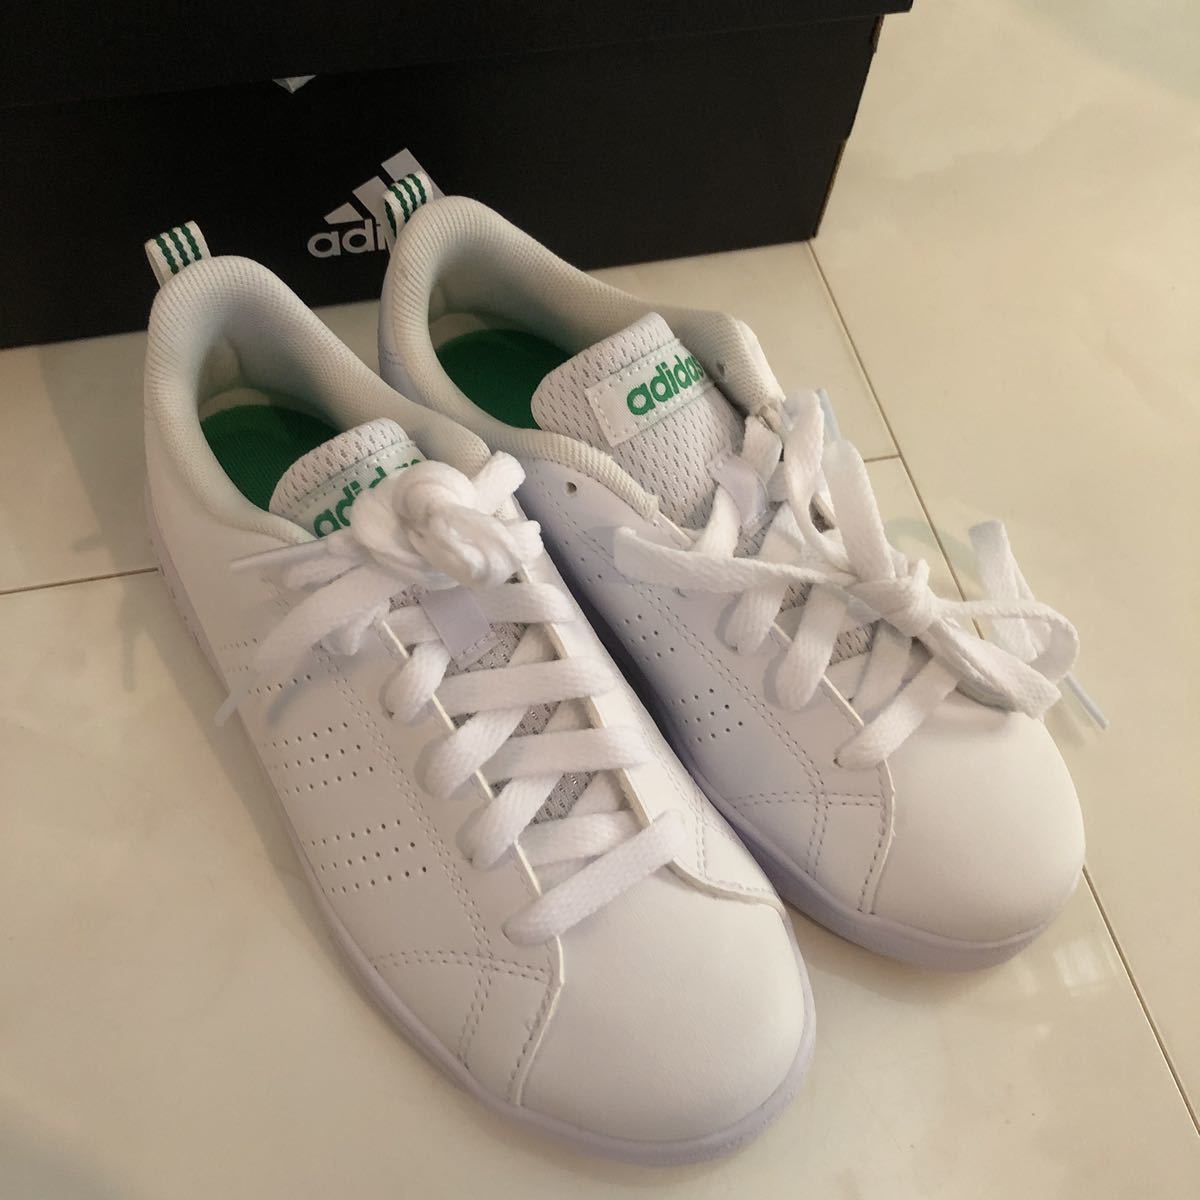  новый товар [ Adidas ]20.0 зеленый VALCLEAN2 K bar clean Kids спортивные туфли low cut мужчина девочка посещение школы обувь 